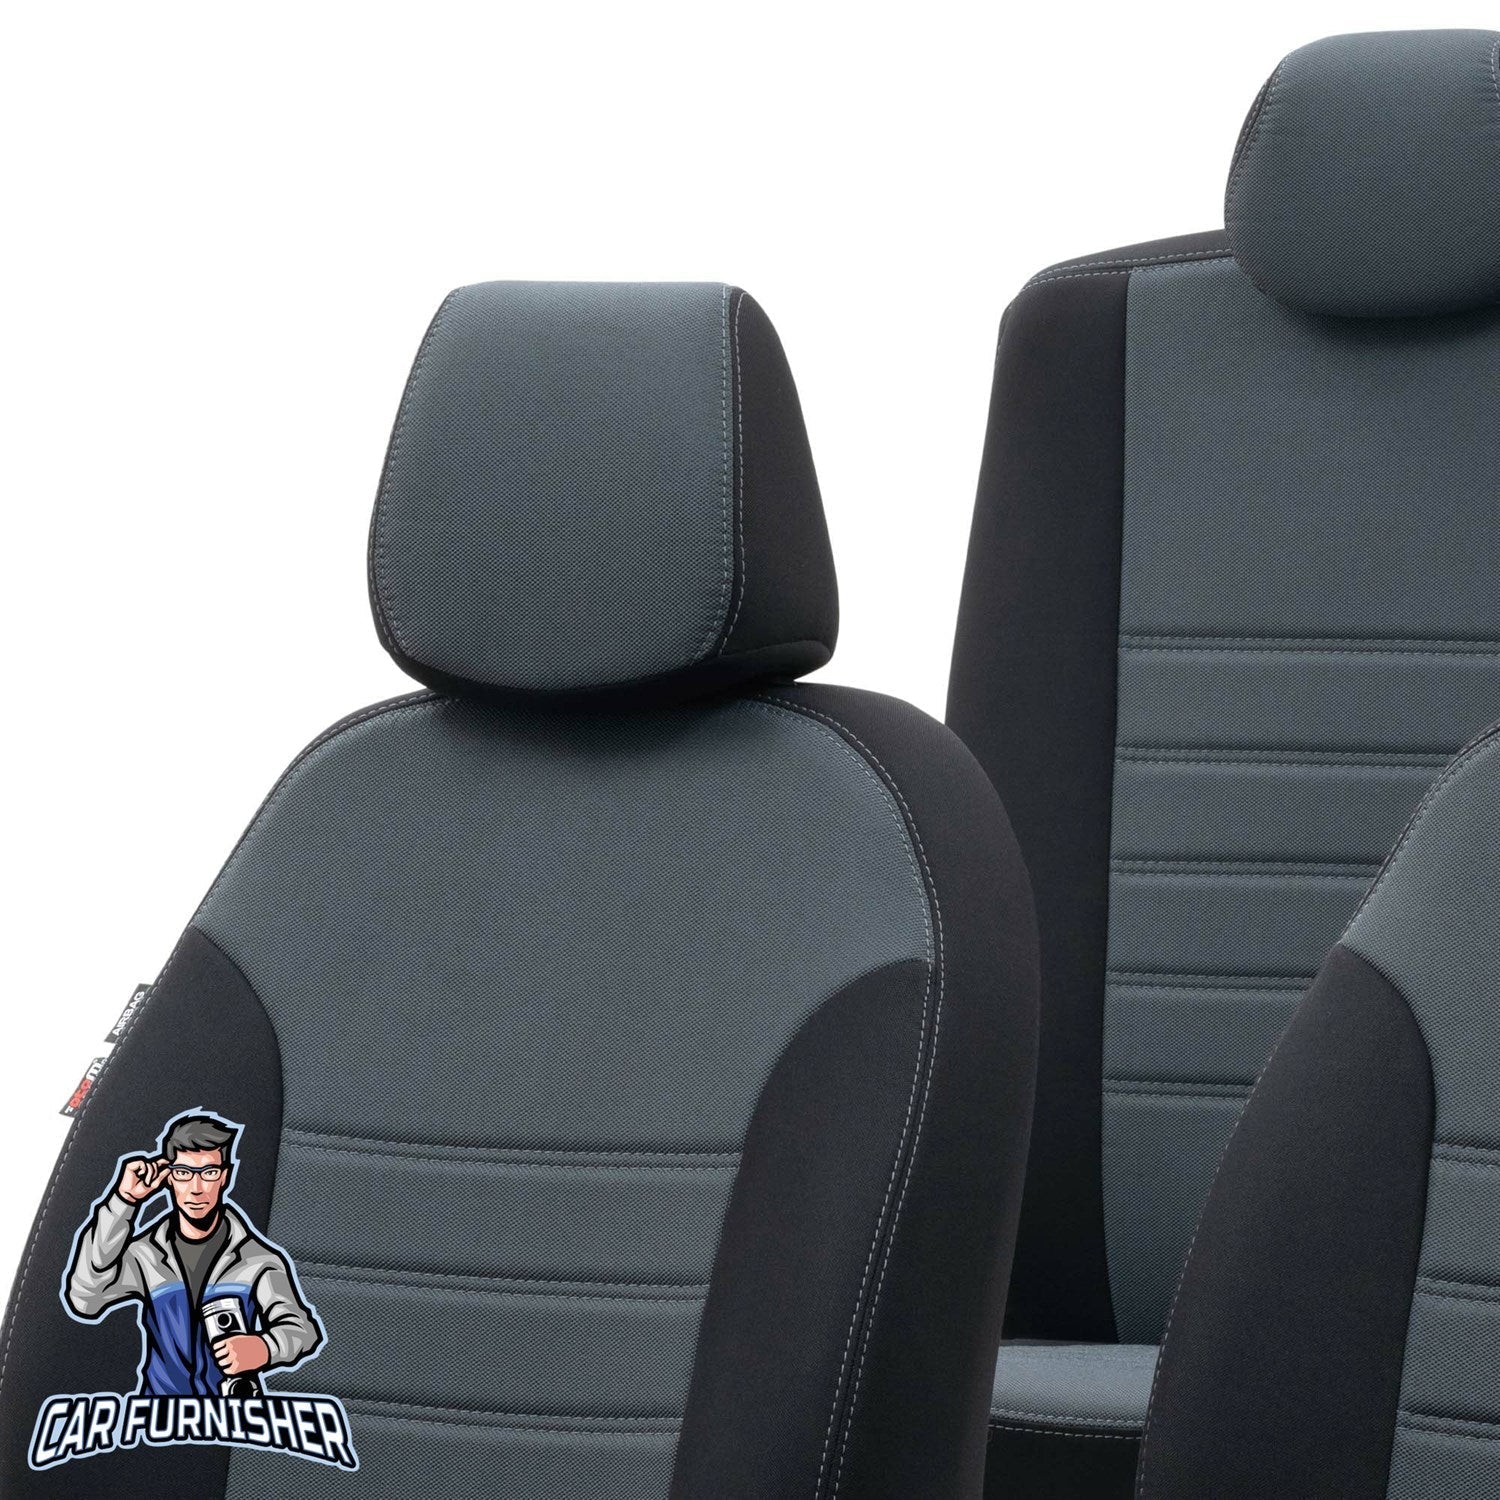 Honda Jazz Seat Covers Original Jacquard Design Smoked Black Jacquard Fabric